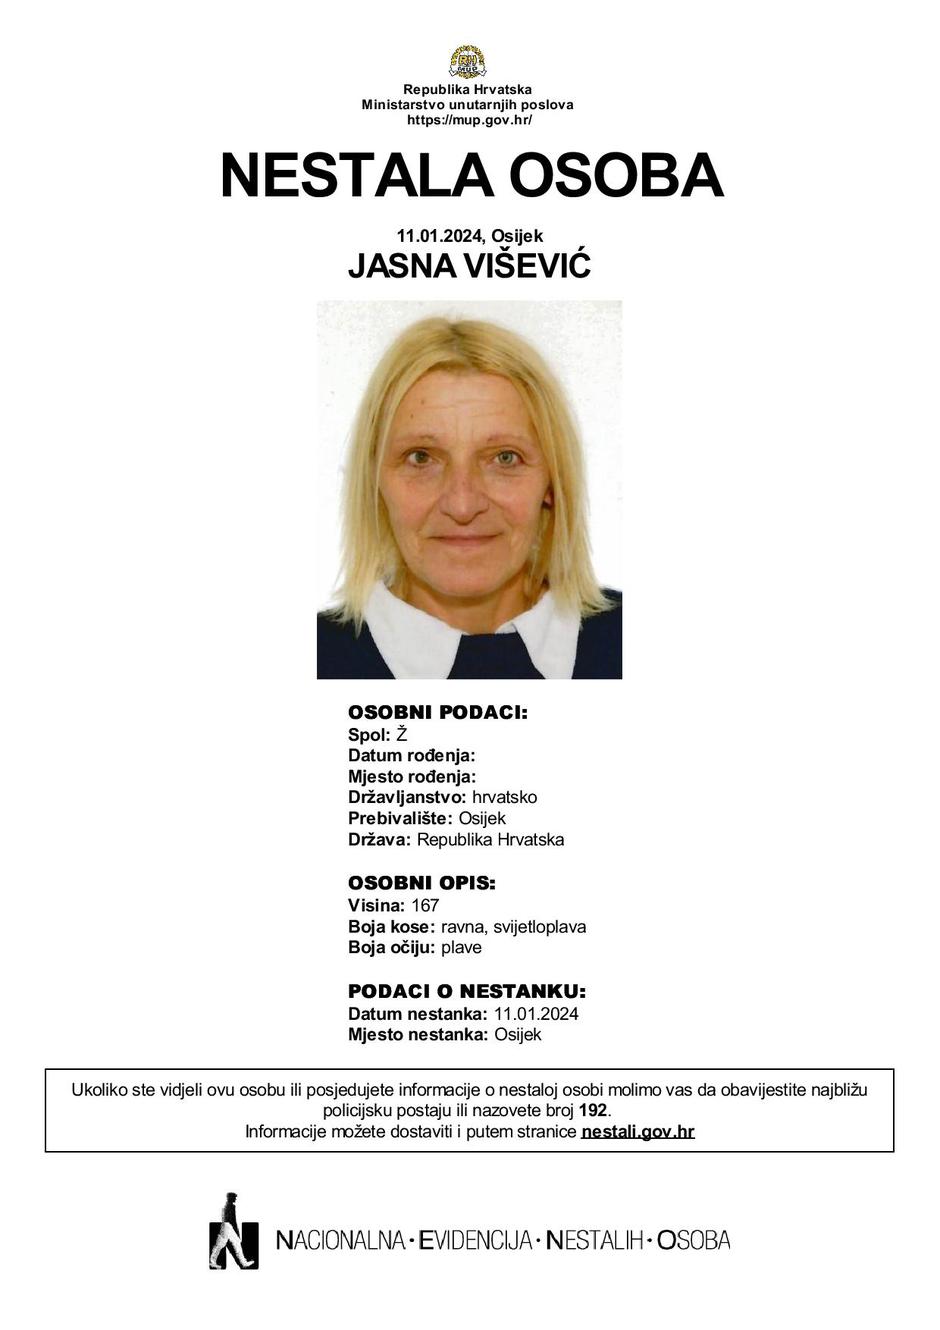 Jasna Viščević